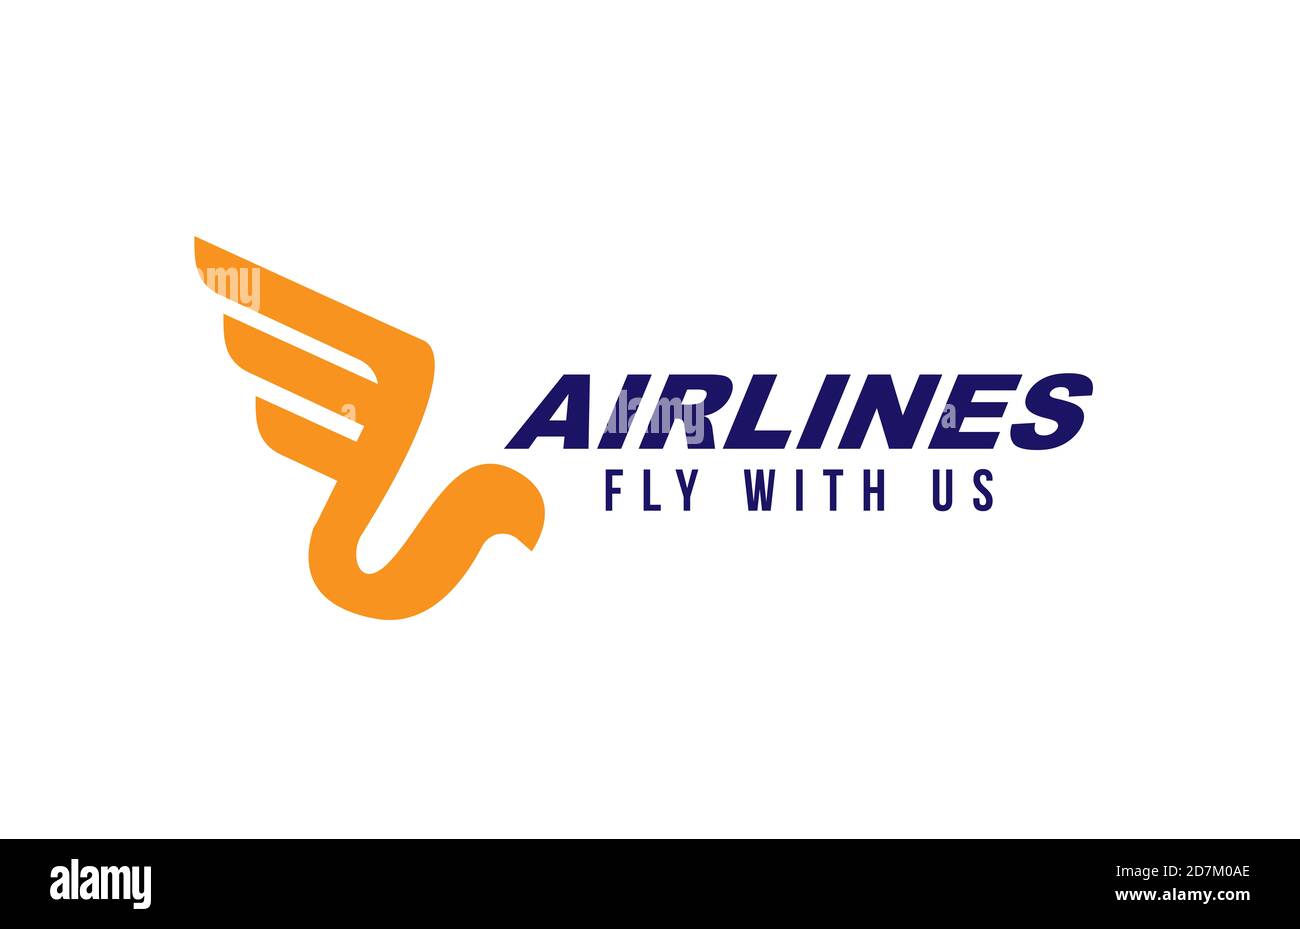 Logo für Fluggesellschaften oder Flugzeuge. Stilisierter Vogel mit Flügel  und Federn. Konzept des Fliegens oder der Geschwindigkeit. Blau und orange  Farbe Stockfotografie - Alamy